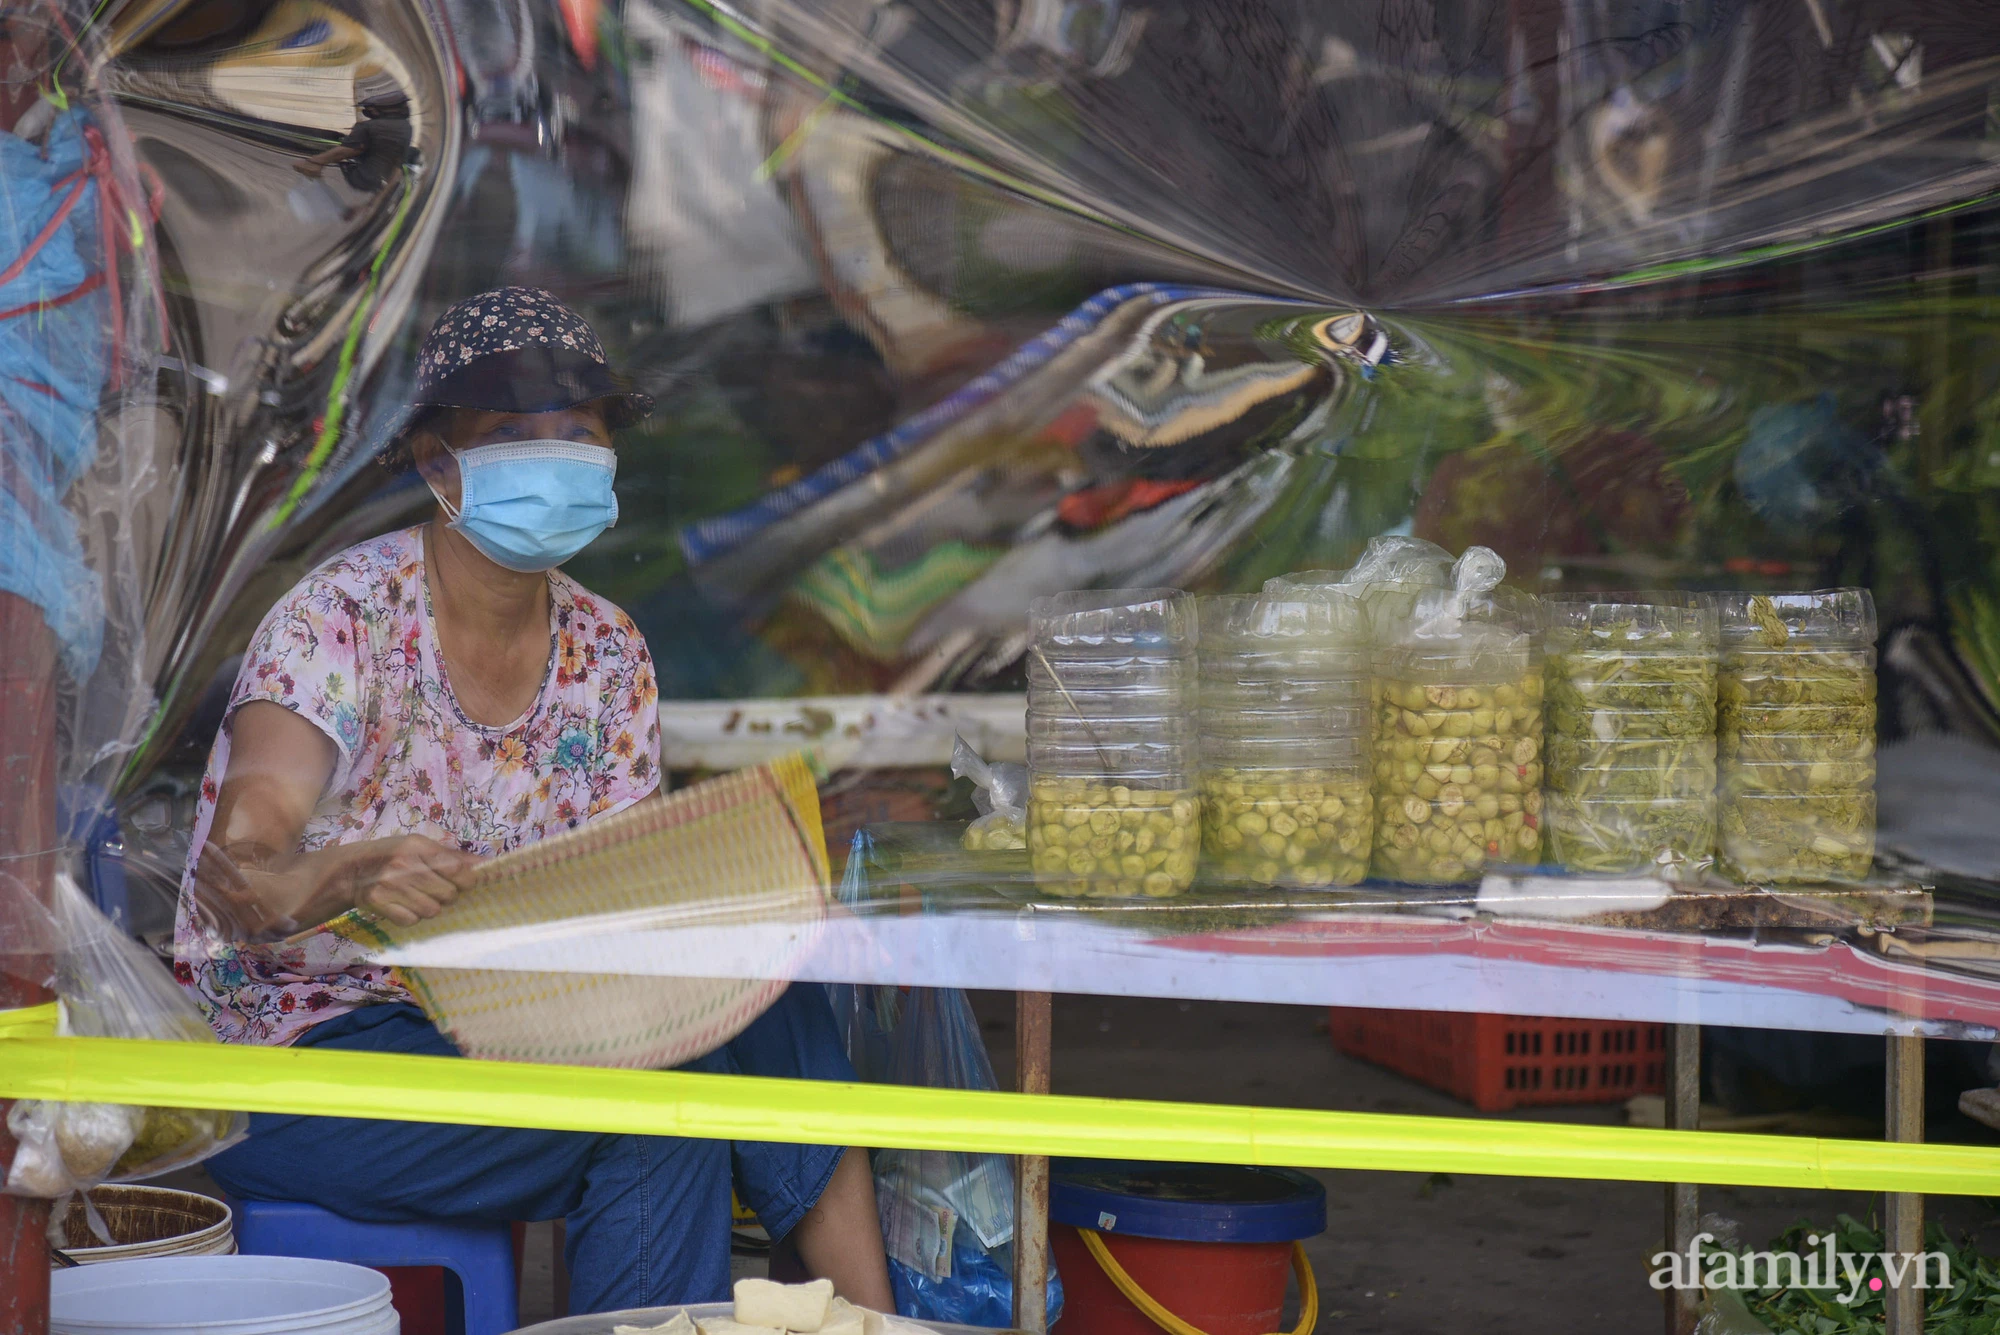 Ấn tượng với khu chợ dân sinh đầu tiên ở Hà Nội quây tấm nilon phòng dịch COVID-19, tiểu thương chia ca đứng bán theo ngày chẵn, lẻ - Ảnh 15.